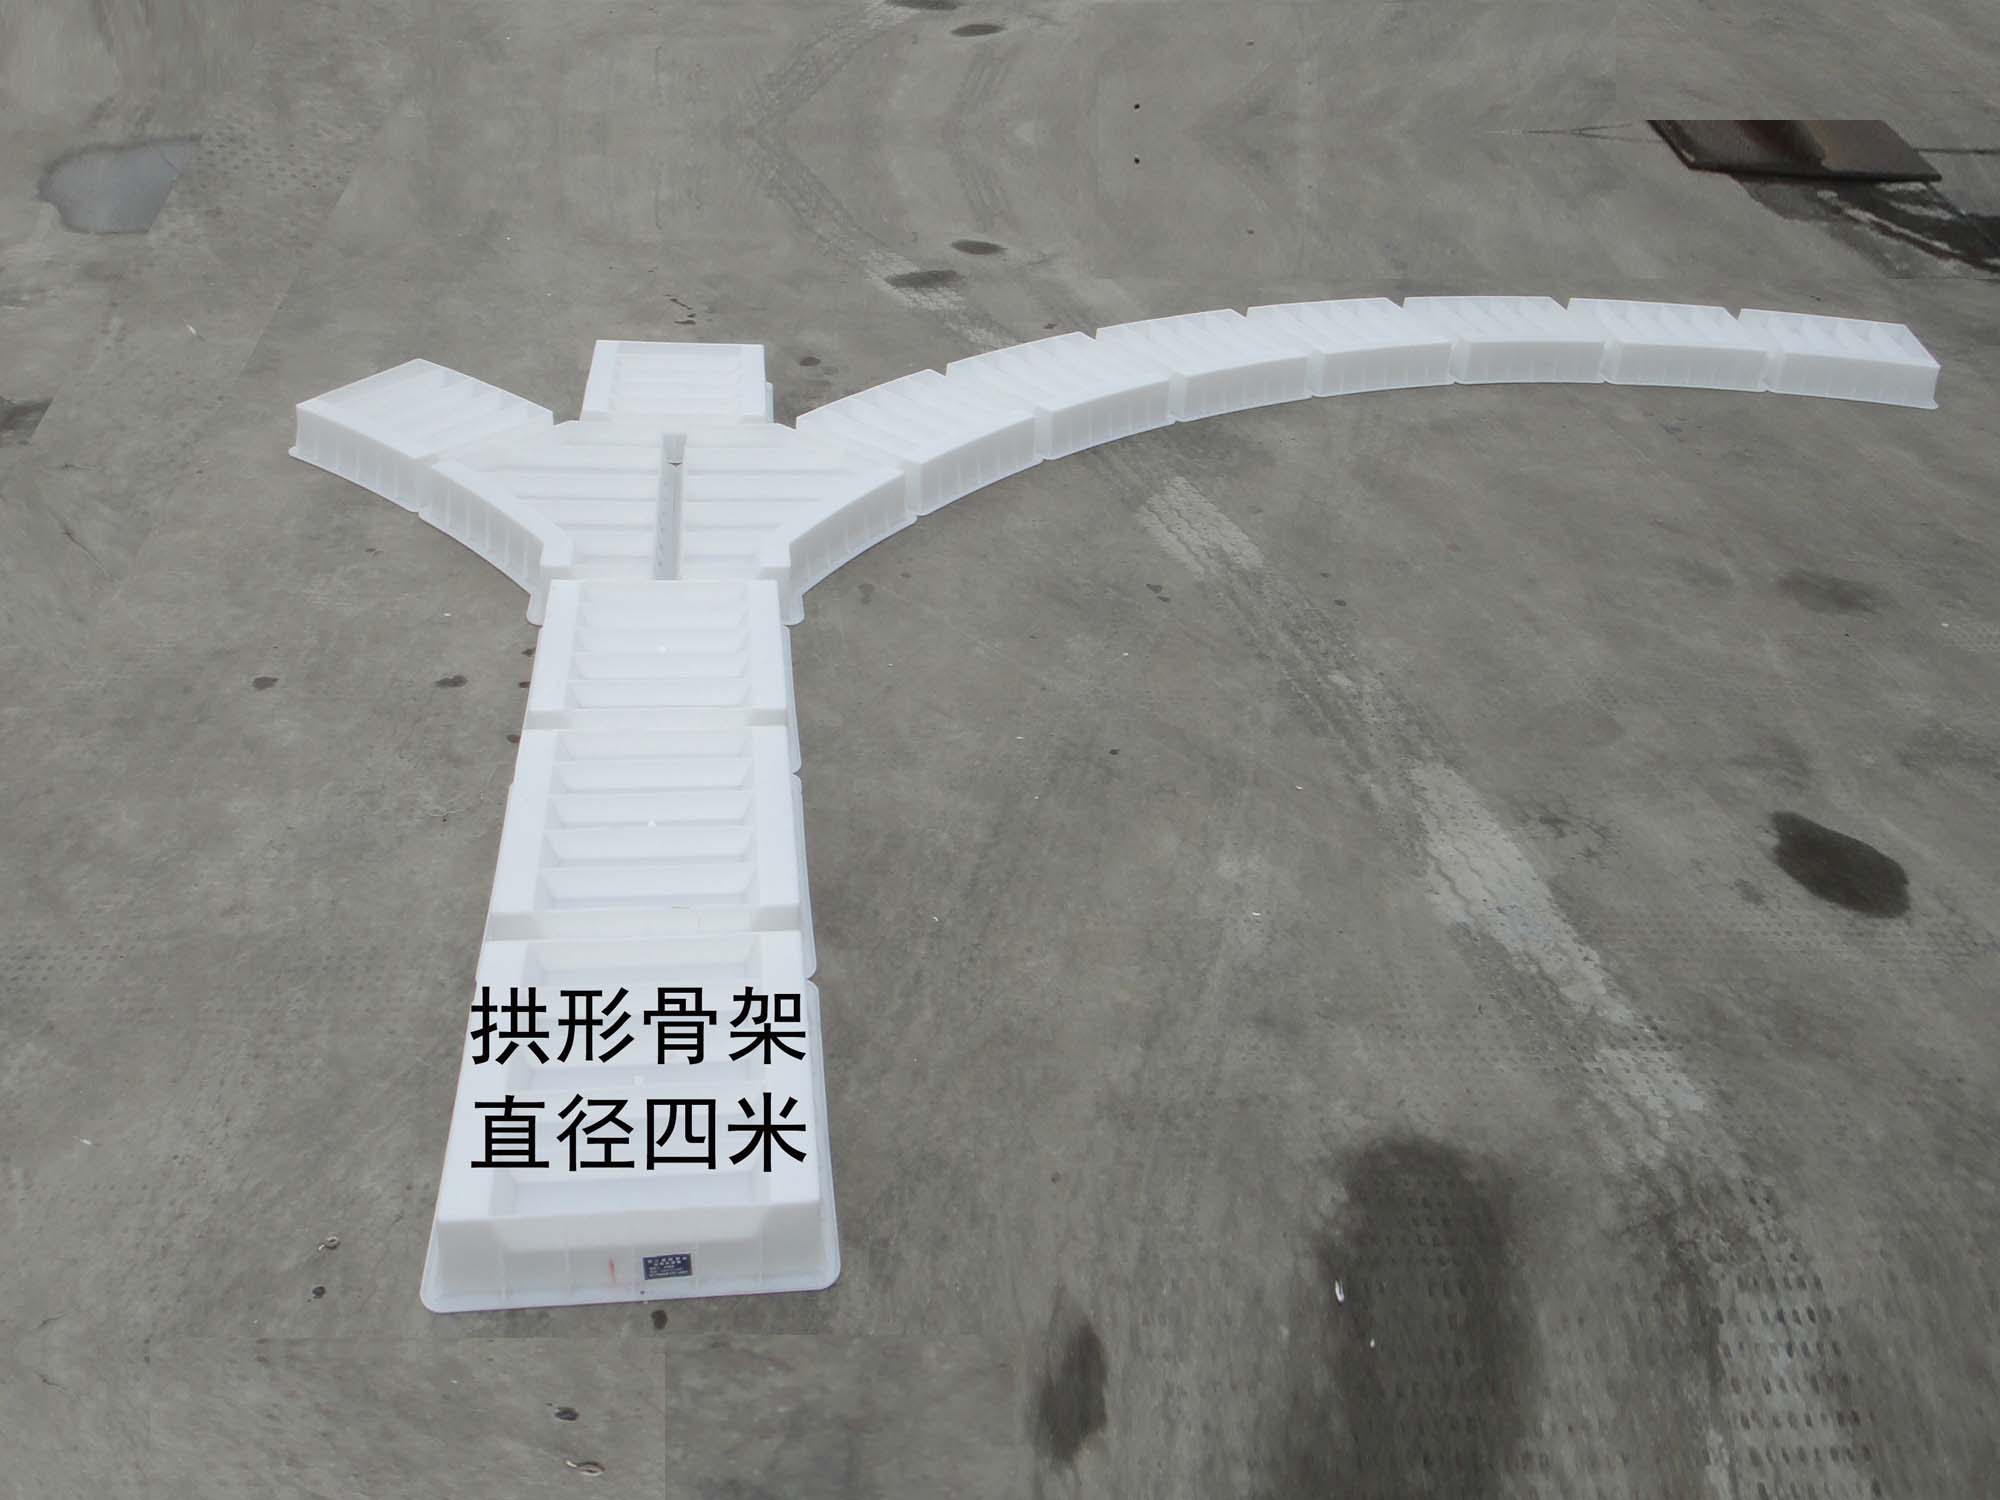 河南通德塑业供应铁路水沟边沟板塑料模具拱形骨架镶边石